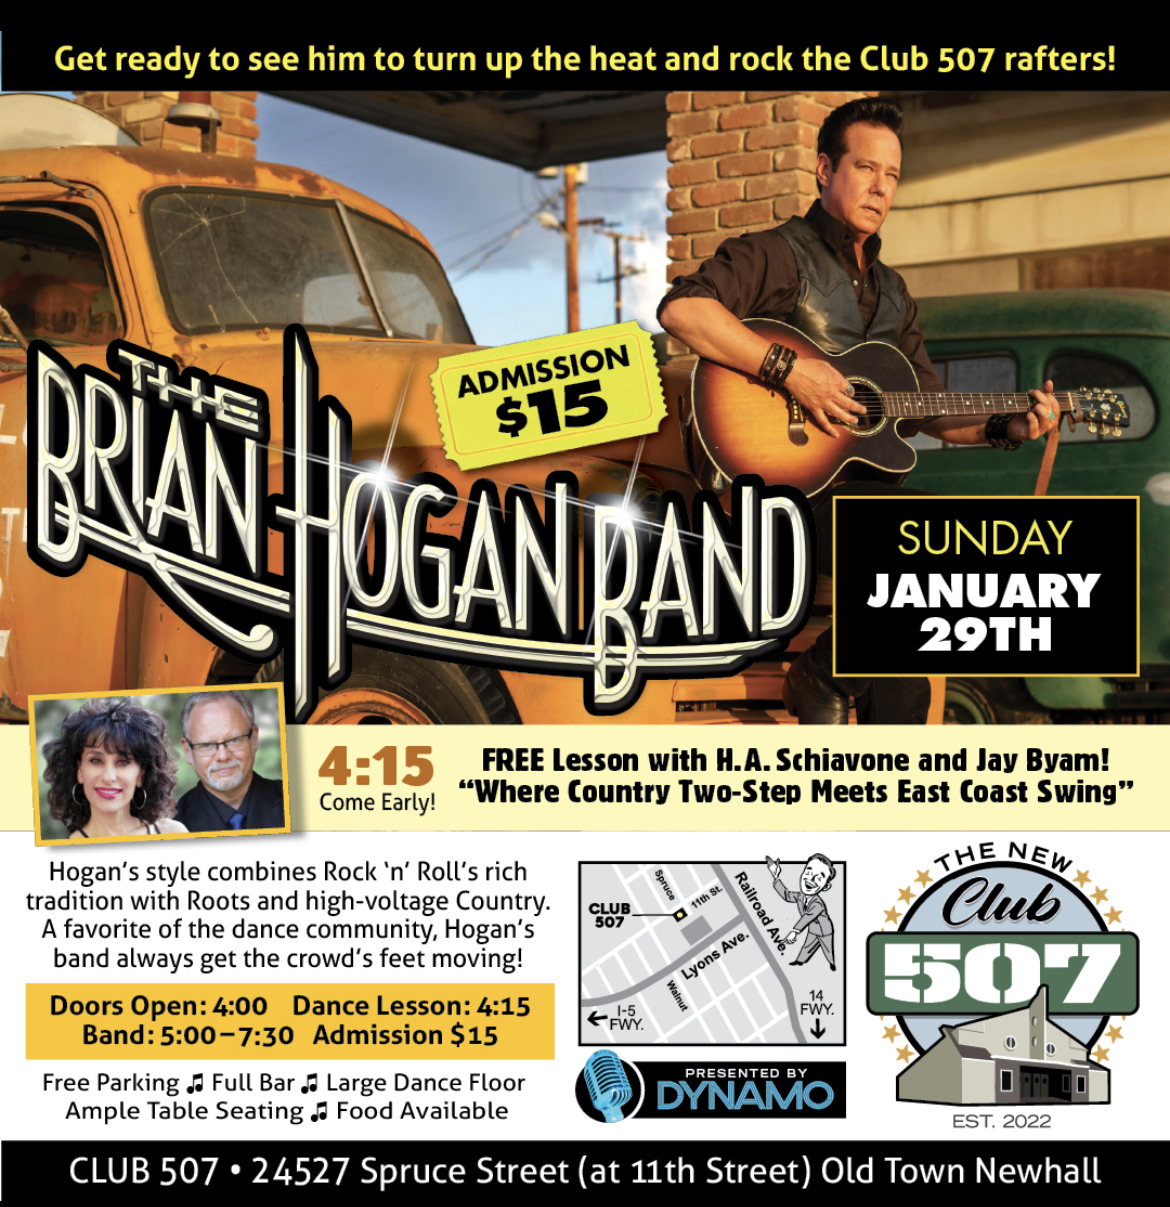 Brian Hogan Band debuts at the New CLUB 507 in Santa Clarita this Sunday, January 29th!